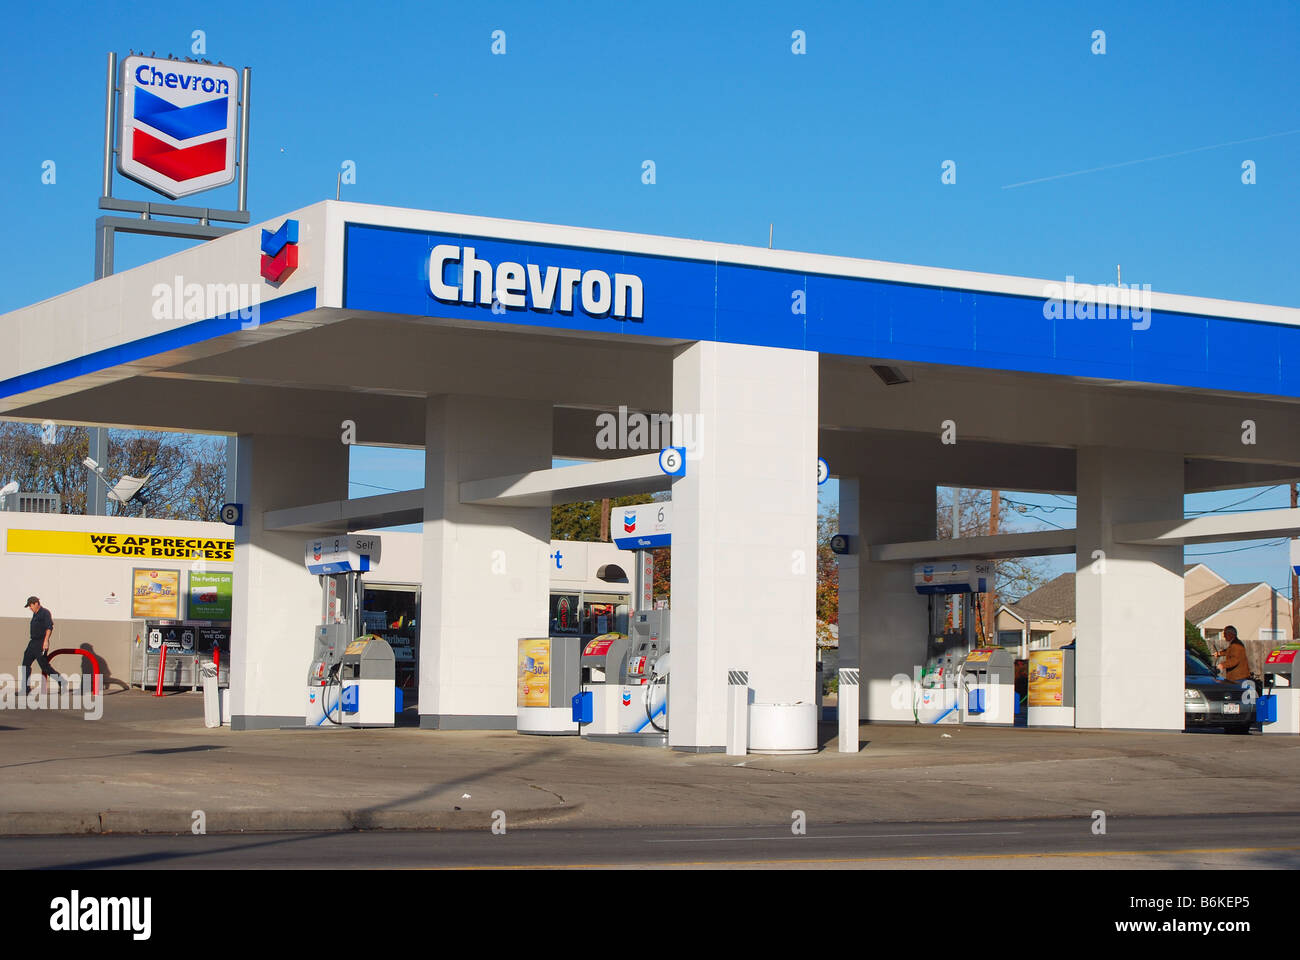 Chevron Gas Station in Texas, USA Stock Photo